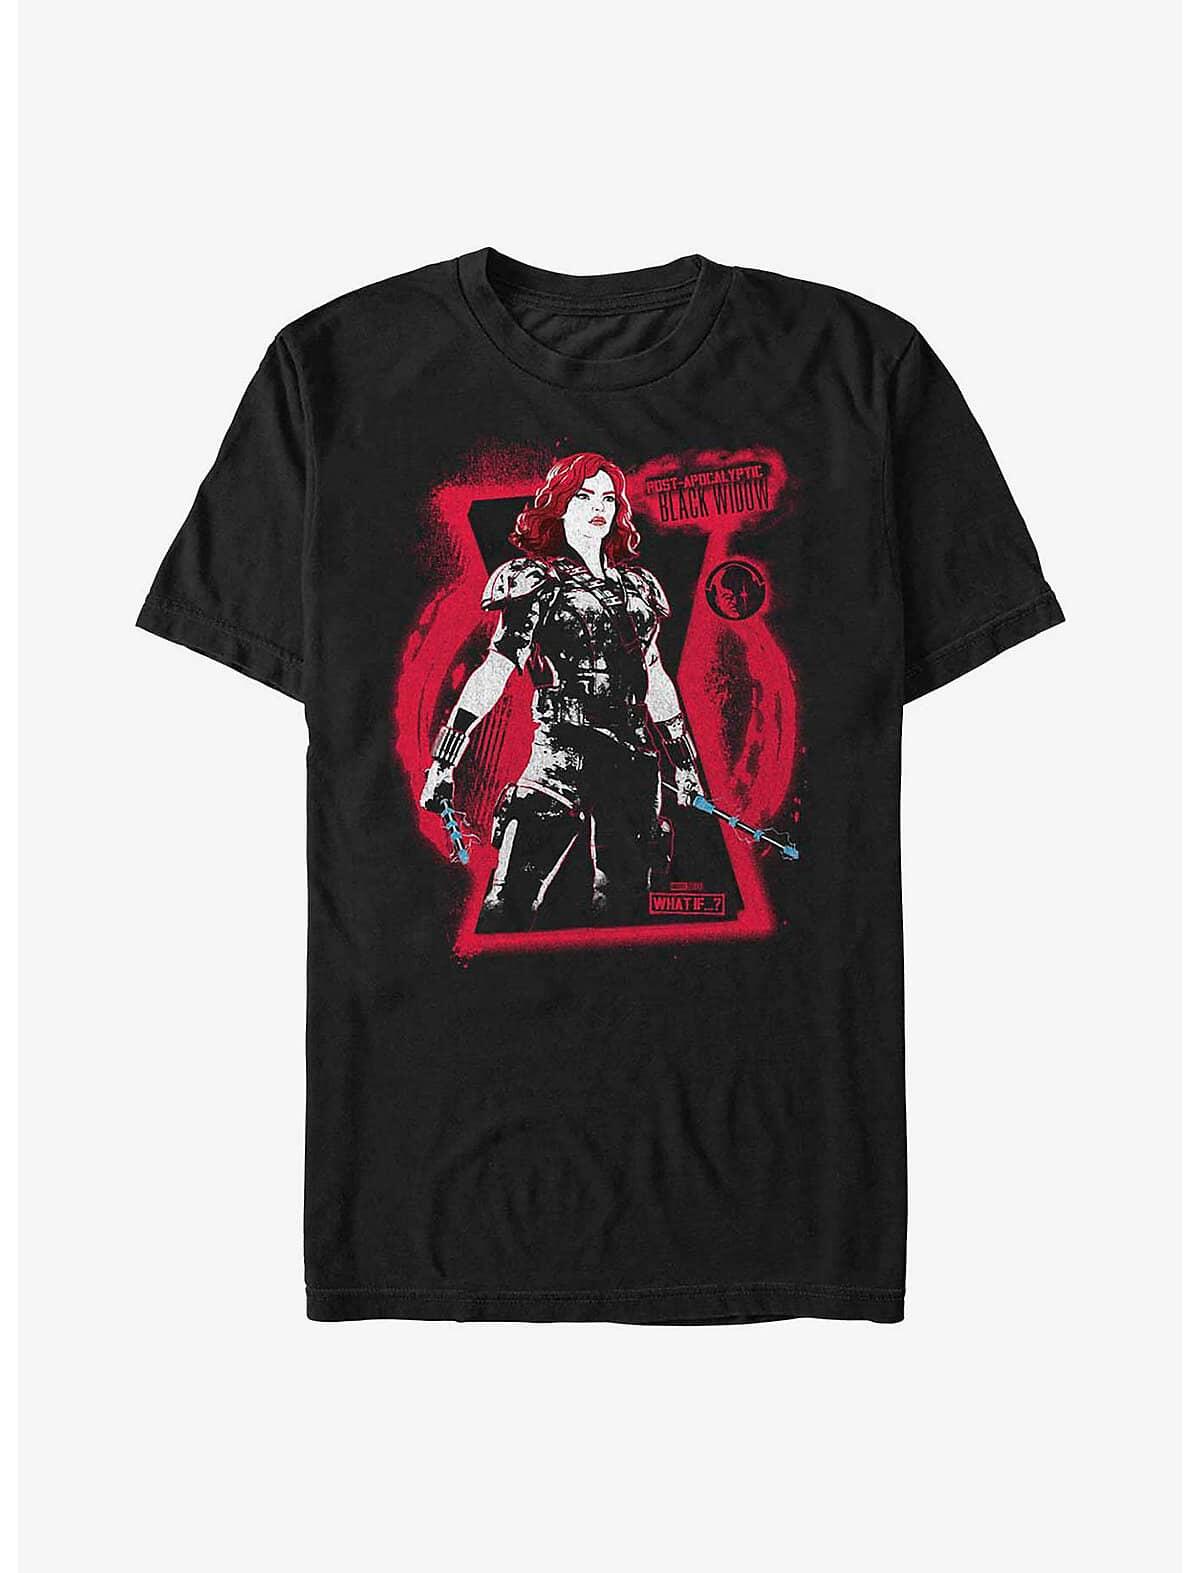 Black Widow Post Apocalypse Ready T-Shirt